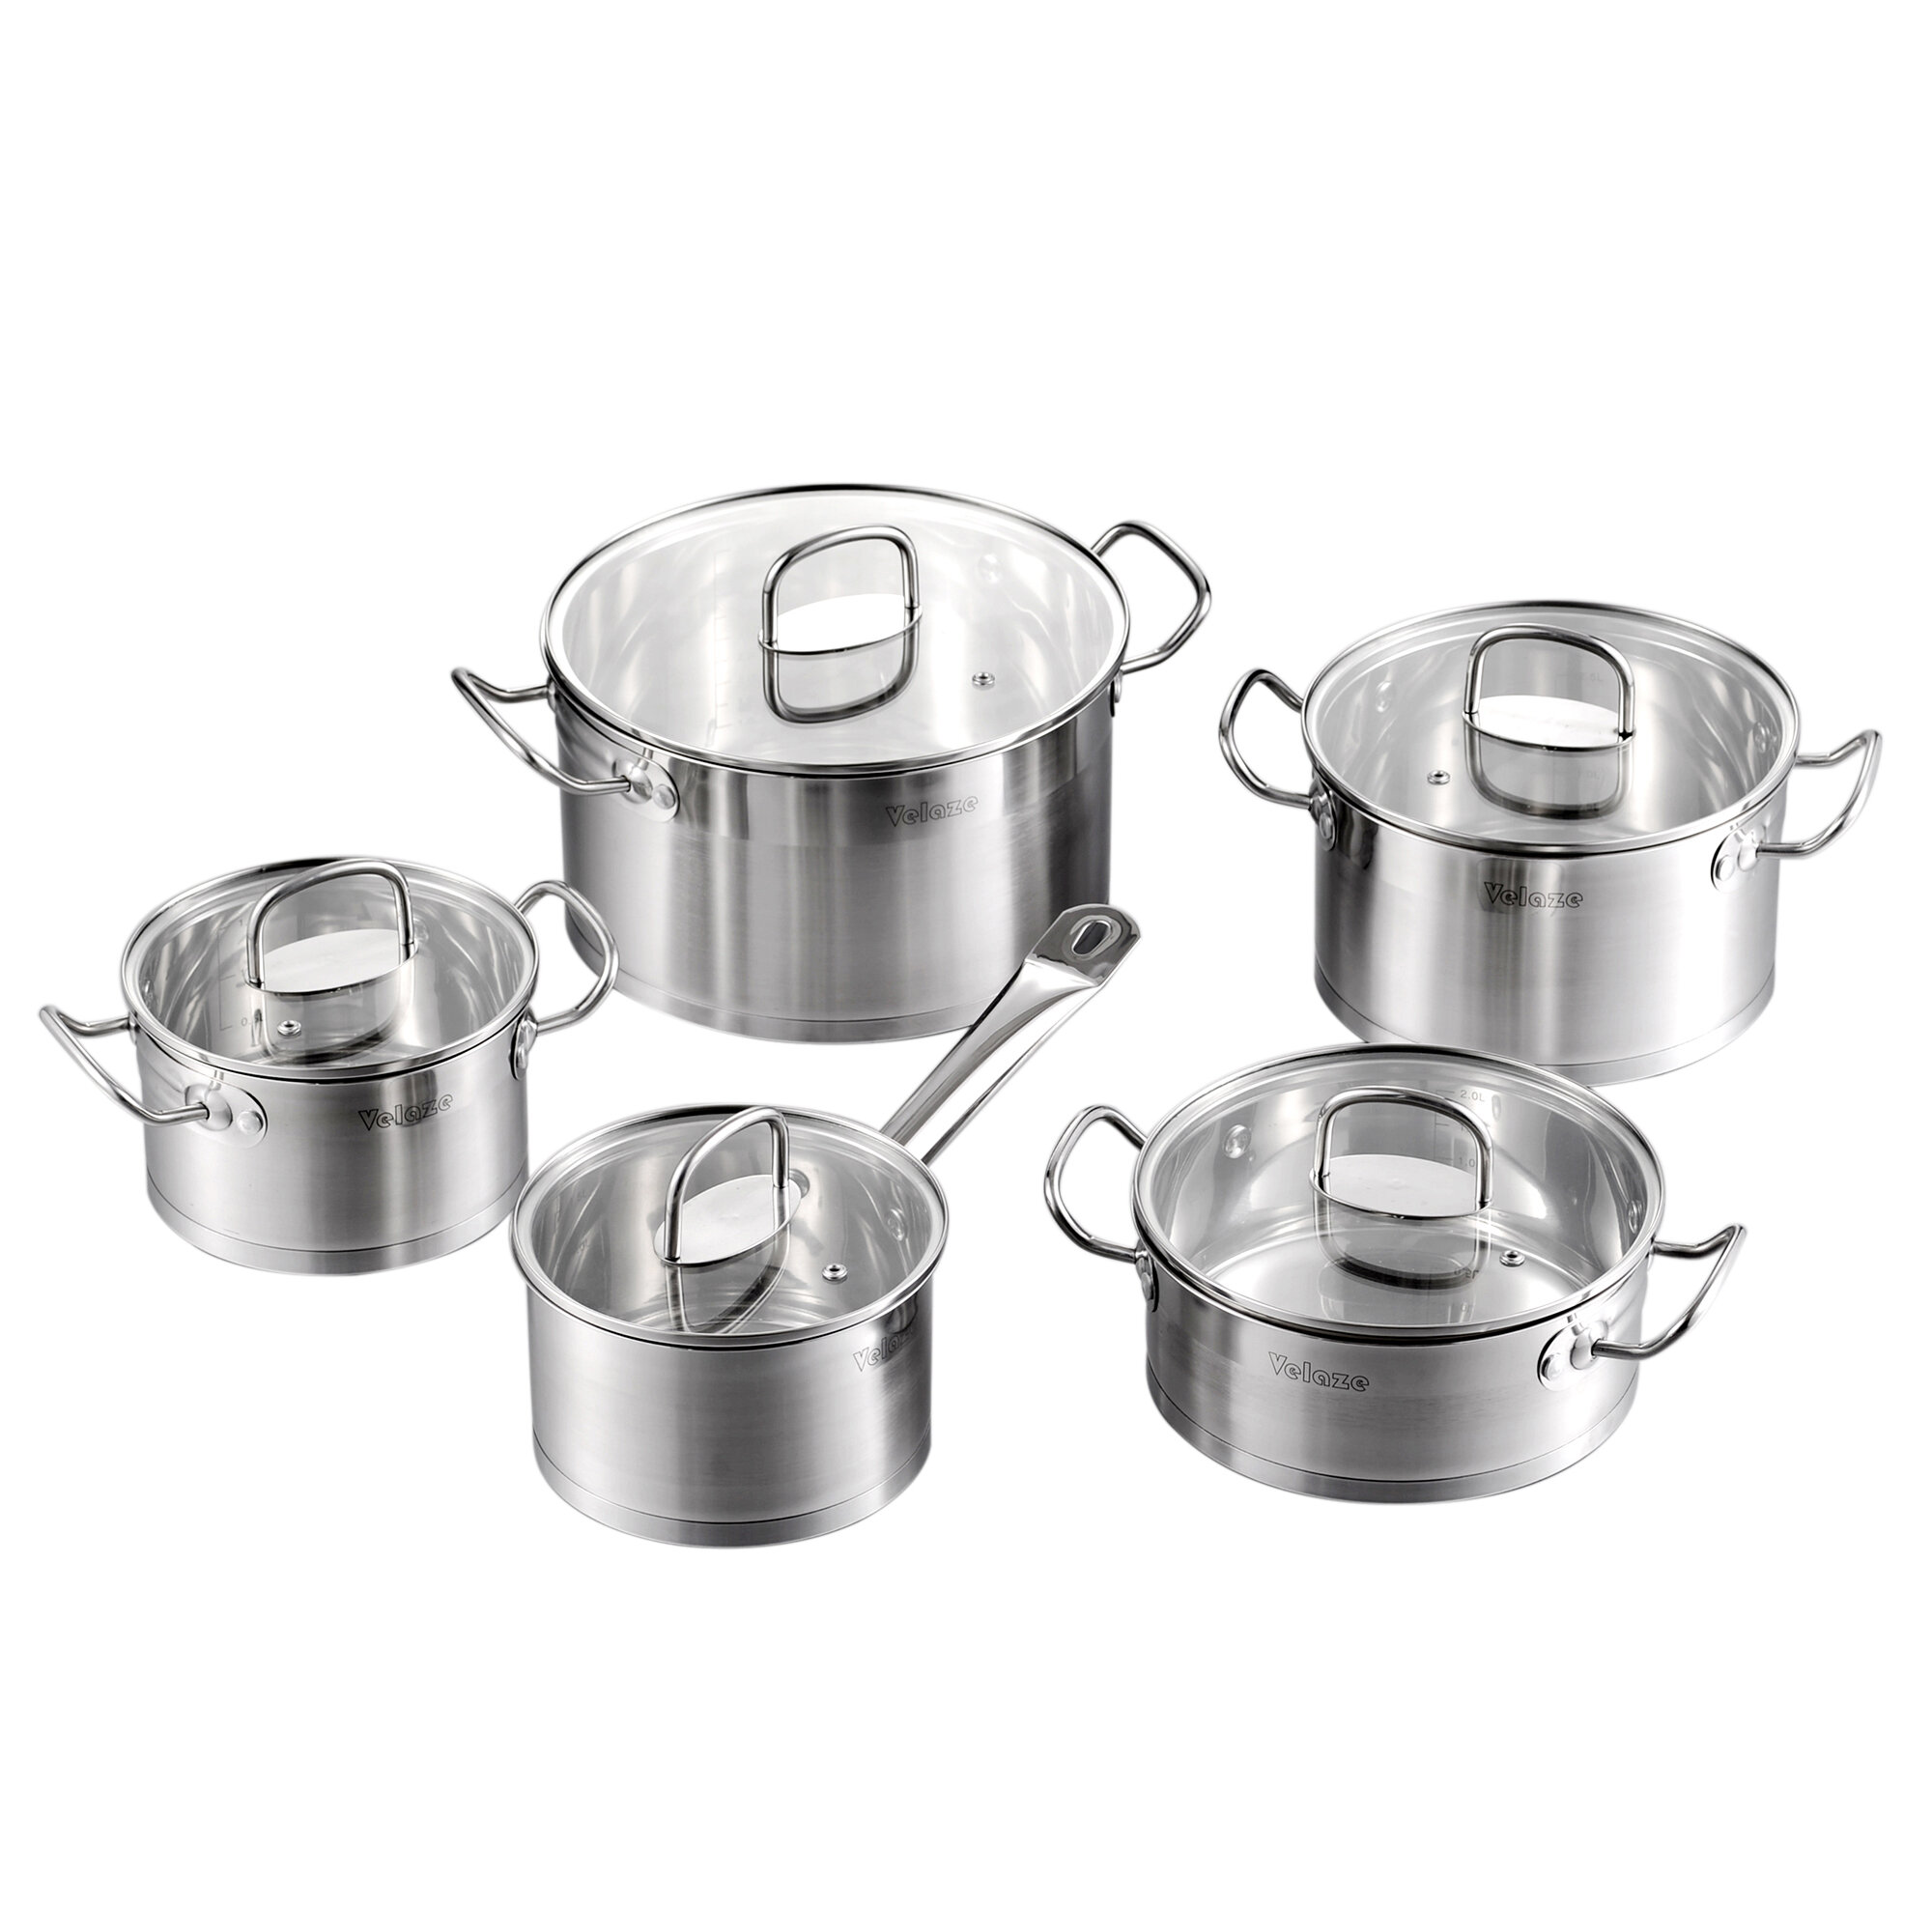 https://assets.wfcdn.com/im/19276040/compr-r85/1530/153062269/mayne-9-piece-non-stick-enameled-cast-iron-cookware-set.jpg